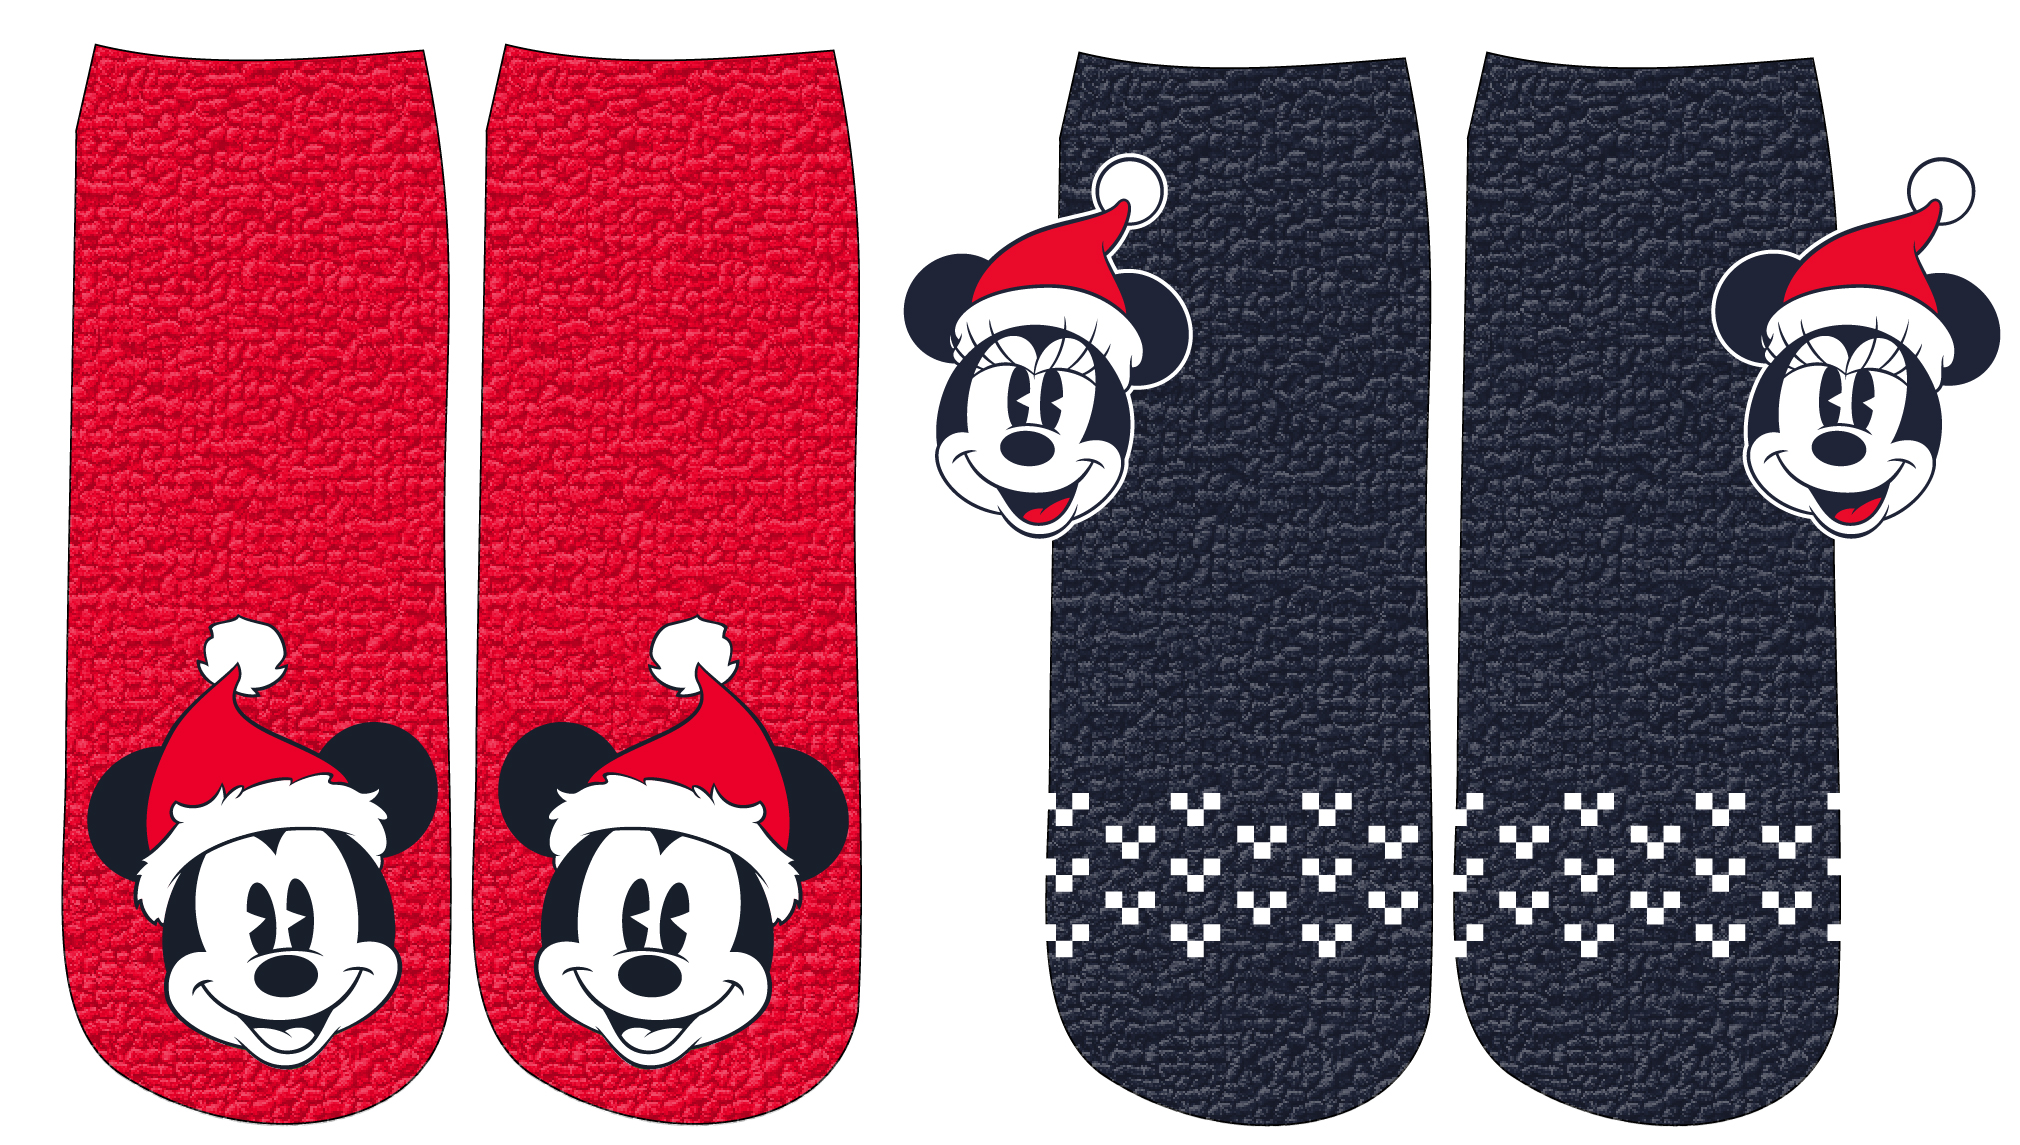 Minnie Mouse - licence Dámské žinylkové ponožky - Minnie Mouse 52349852, červená / tmavě modrá Barva: Mix barev, Velikost: 39-41